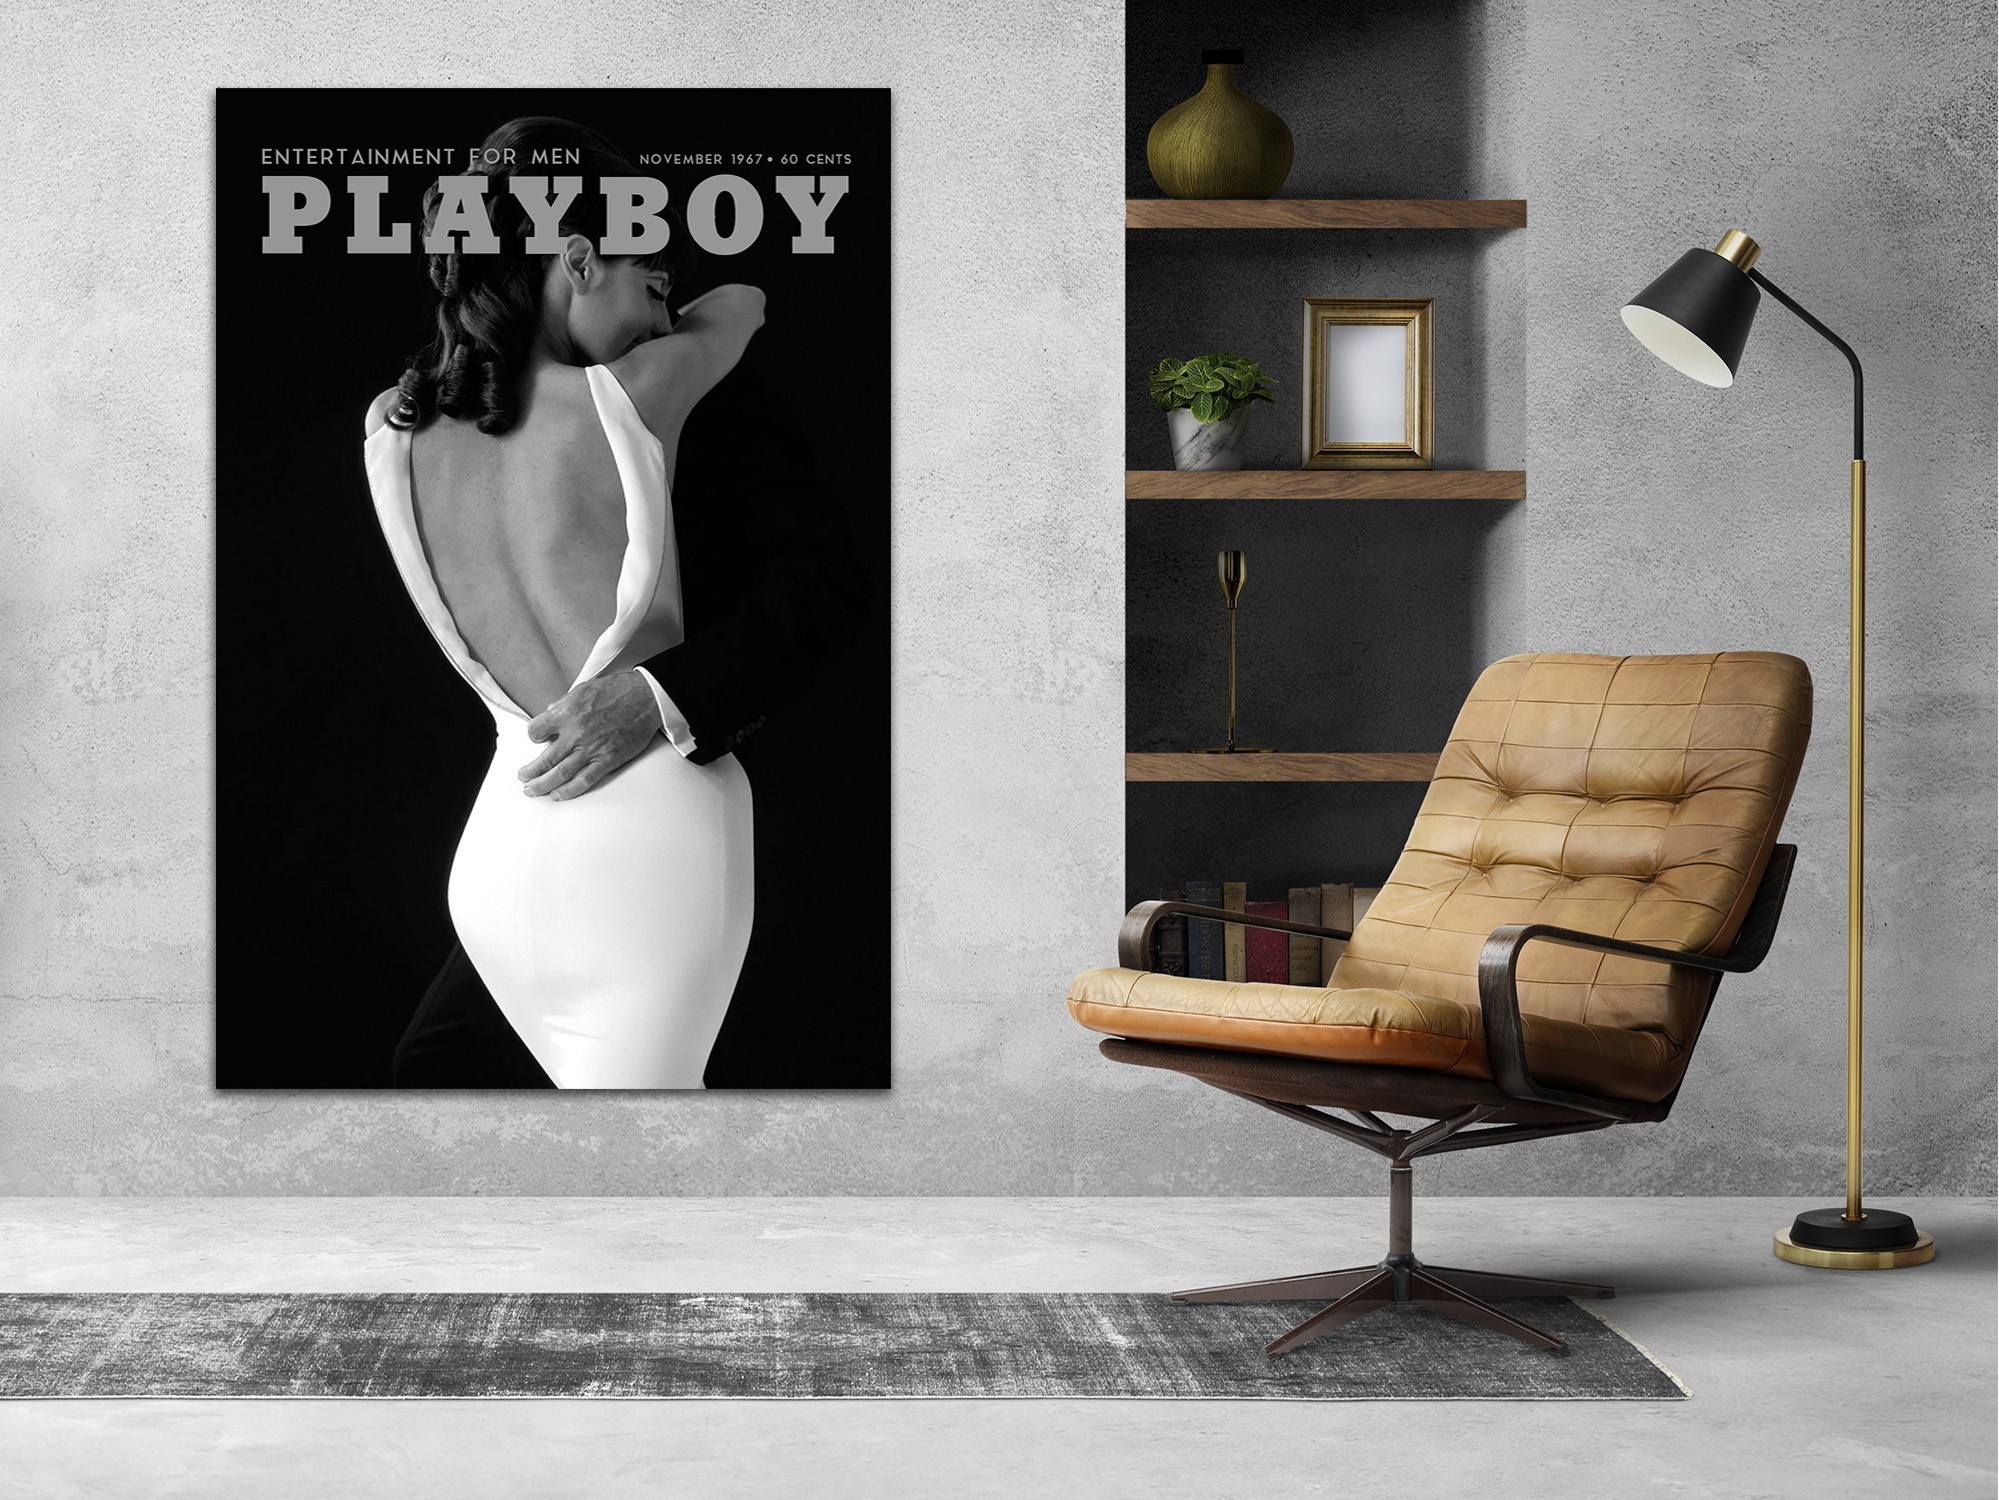 Playboy, фото голых девушек плейбоя. Эротические фотосессии